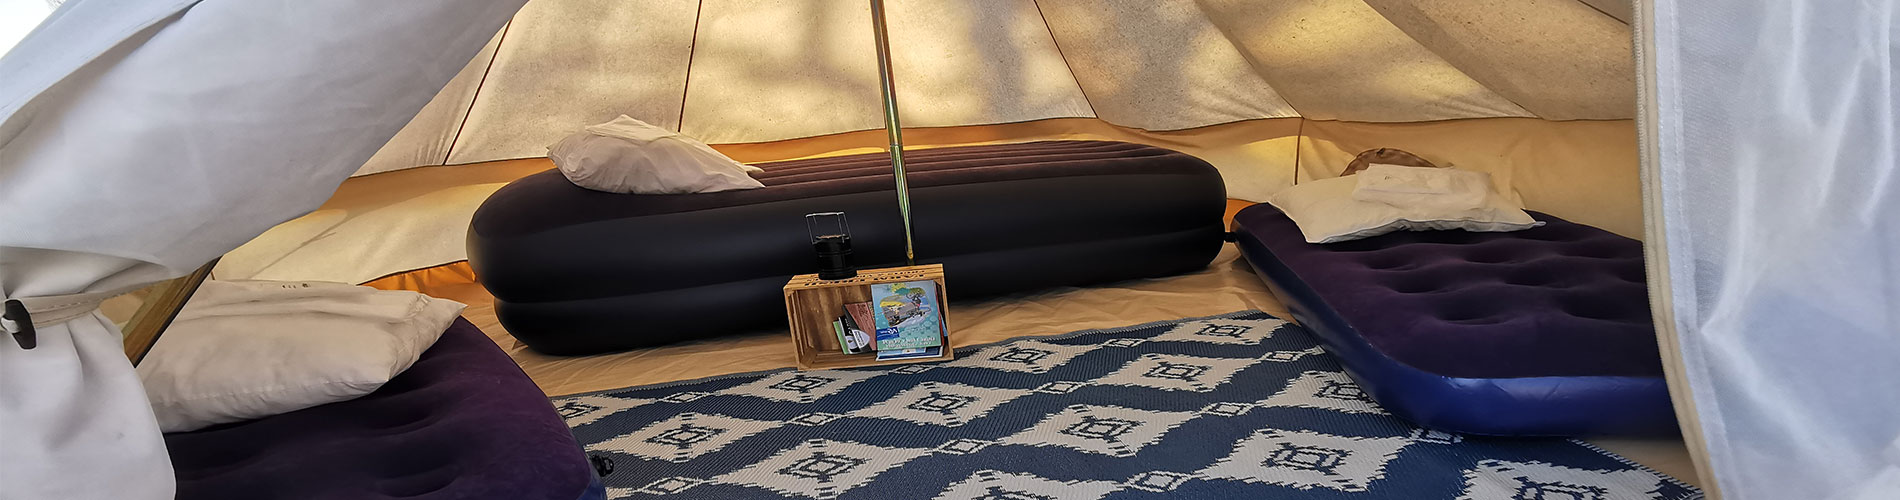 location d'emplacement, de mobil-home pour séjour en tente, caravane, camping-car sur le passage de la viarhôna hieres sur amby